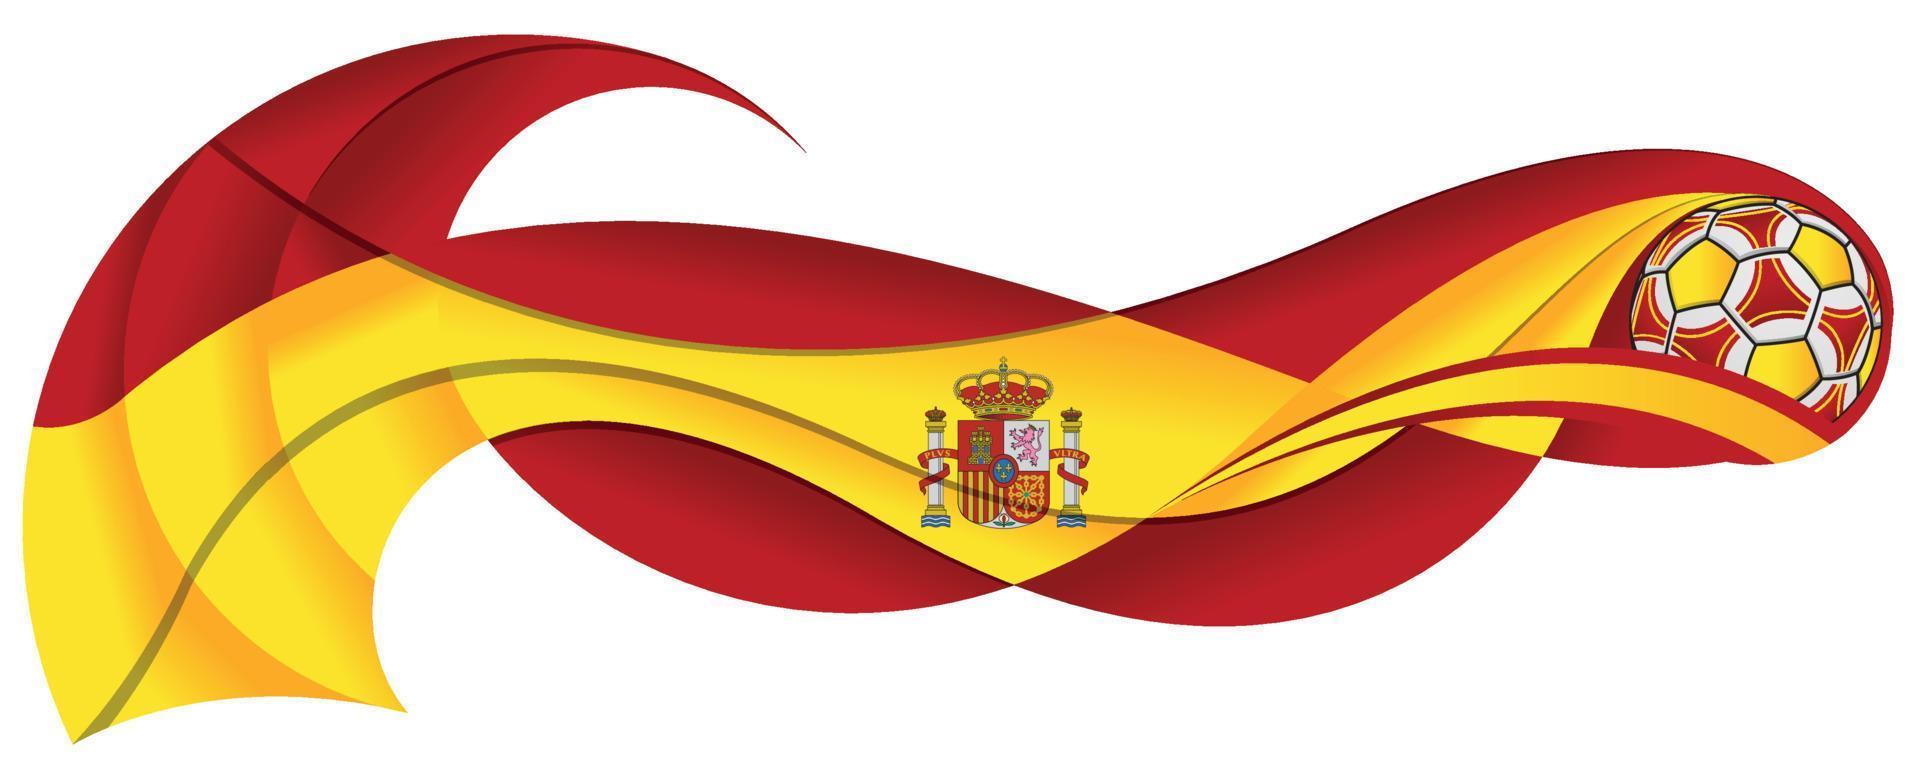 ballon de football jaune et rouge laissant une traînée ondulée aux couleurs du drapeau espagnol sur fond blanc vecteur